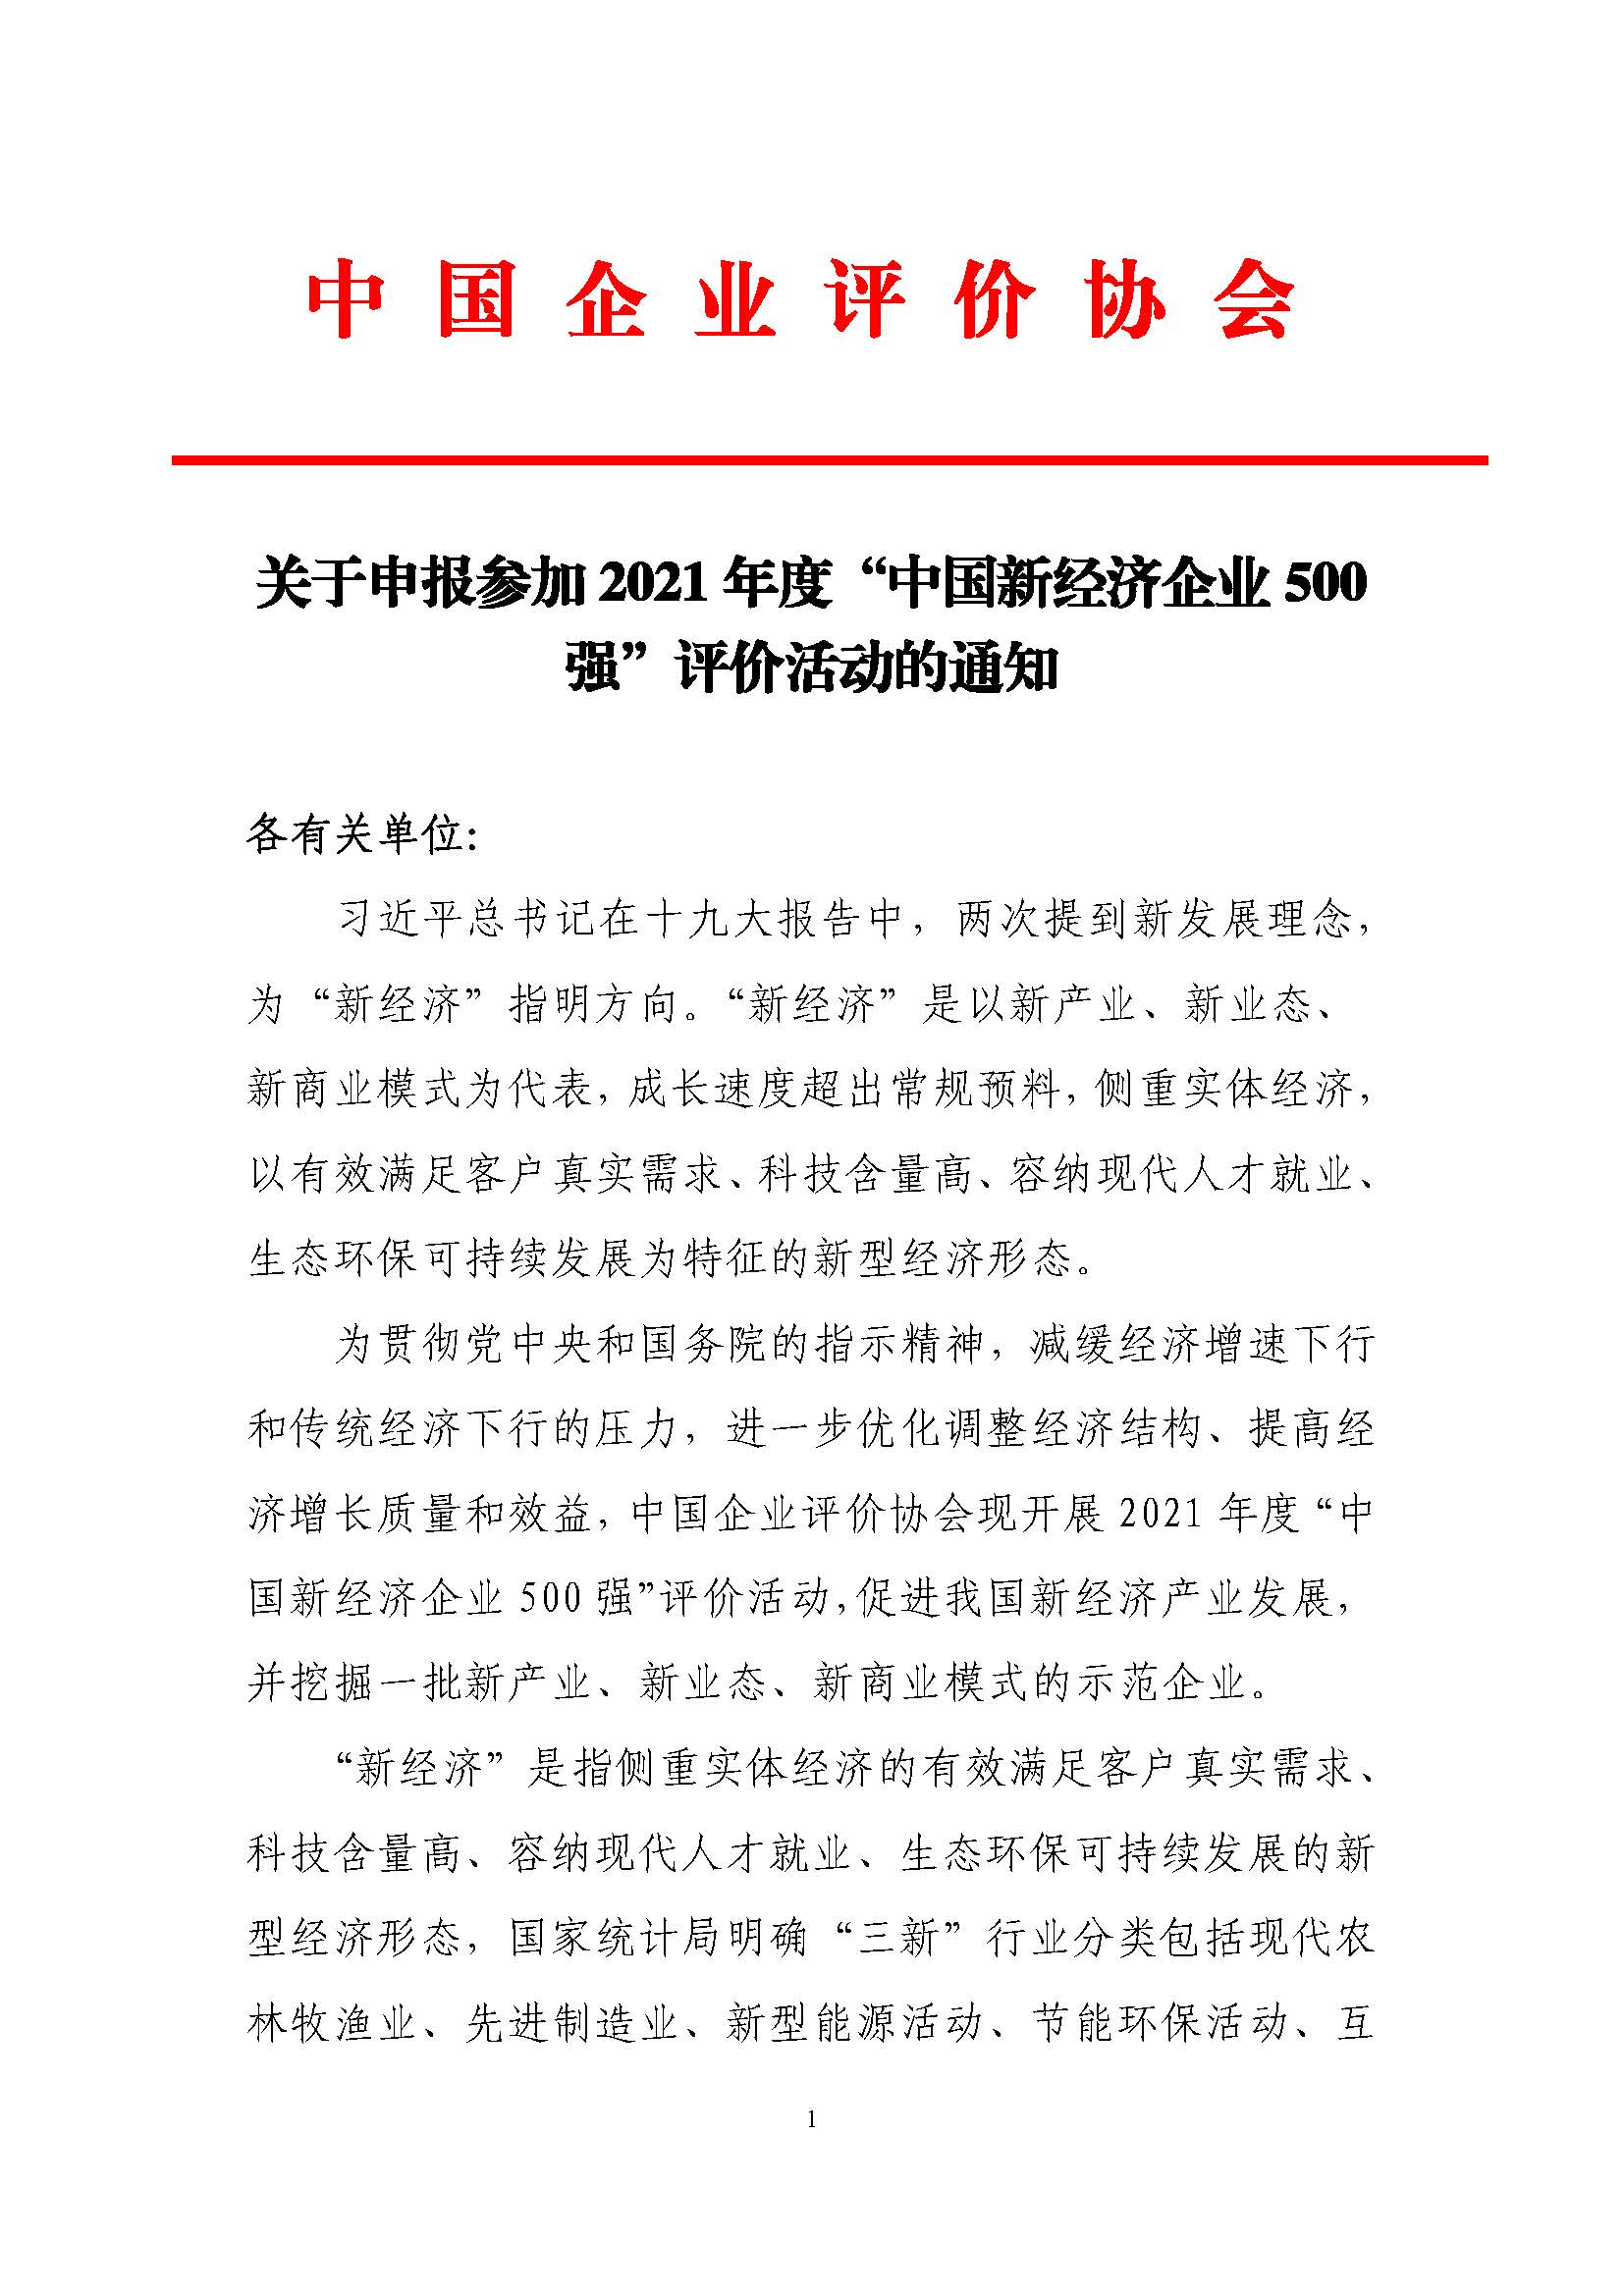 关于申报参加2021年度“中国新经济企业500强”评价活动的通知_页面_1.jpg